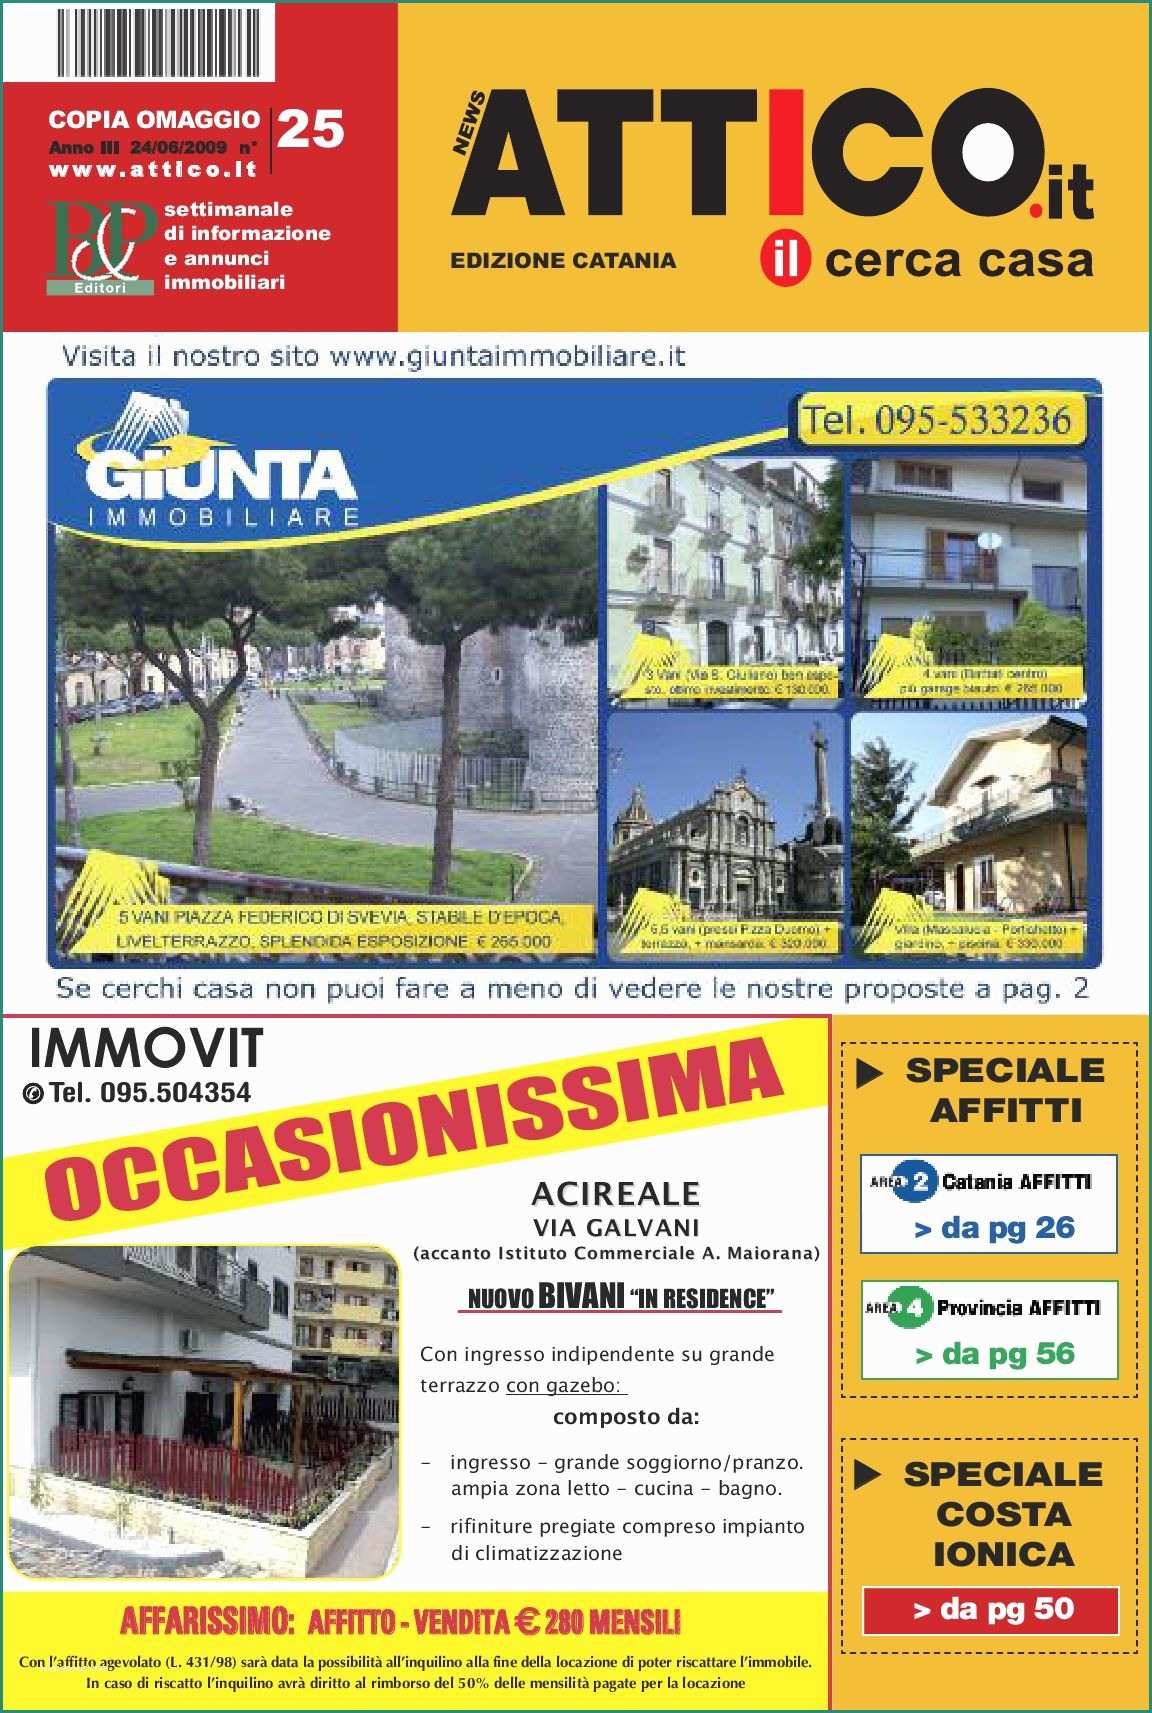 Prezzi Case Prefabbricate In Legno Chiavi In Mano Romania E attico Catania by B&p Editori issuu